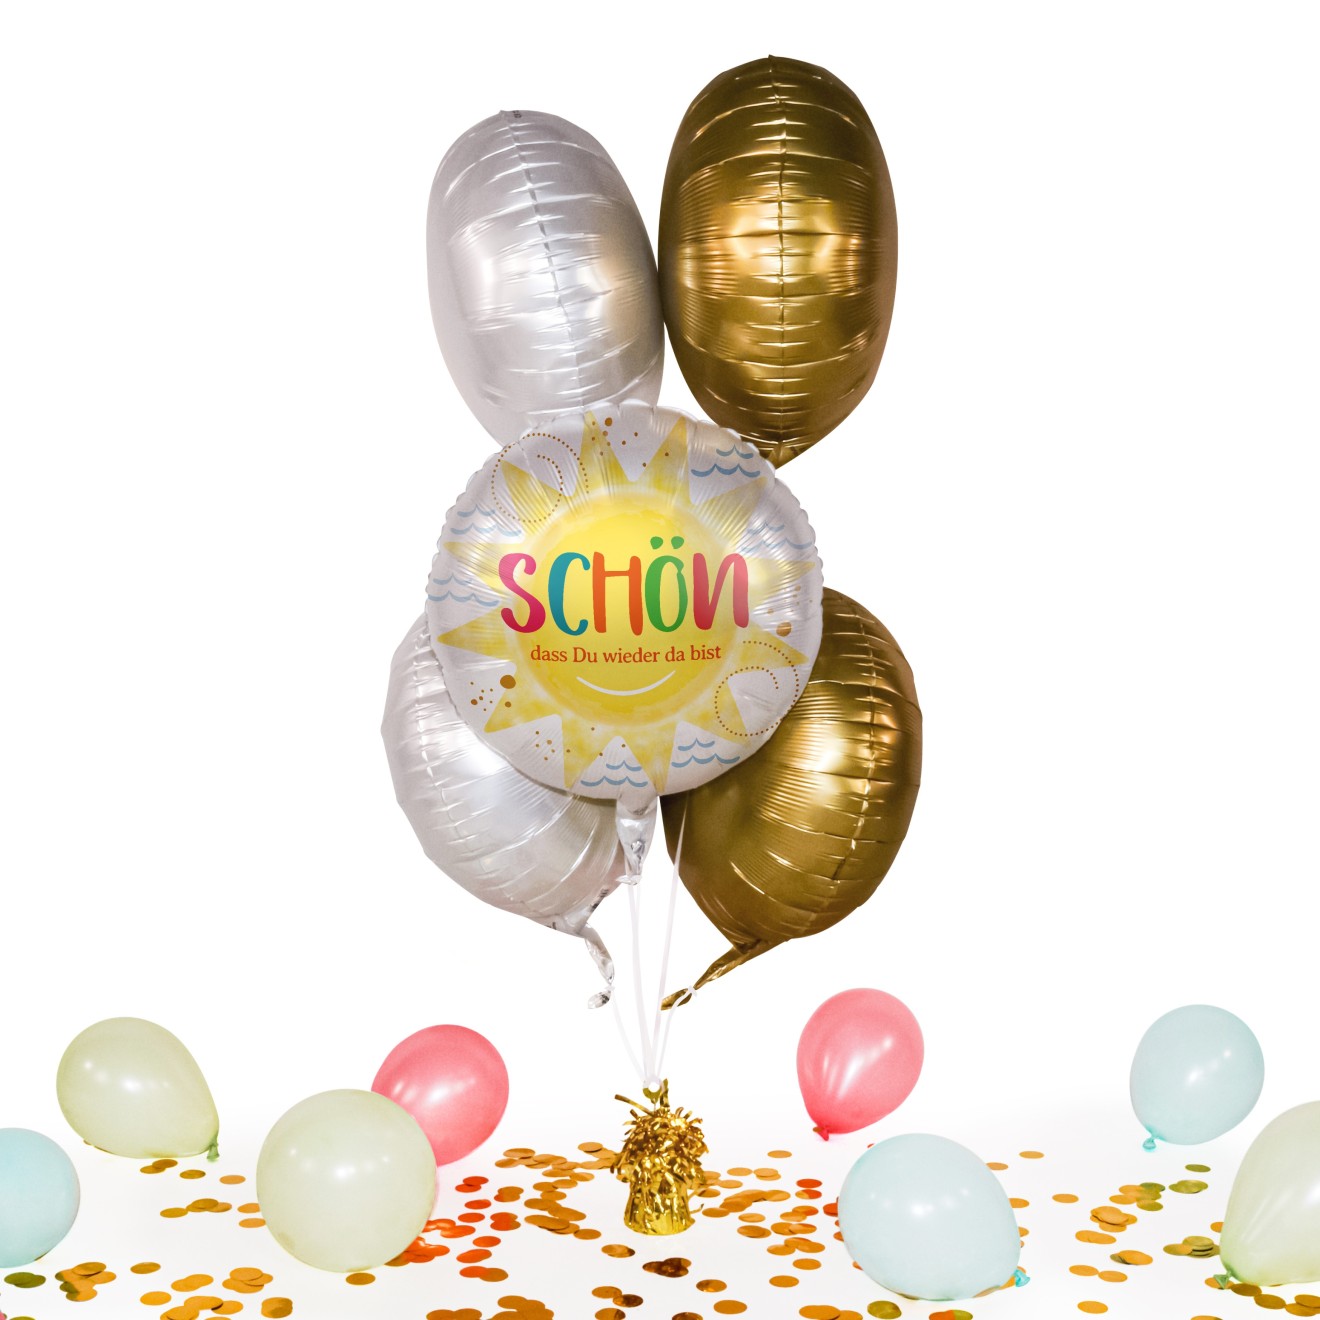 Heliumballon in a Box - Schön, dass du wieder da bist